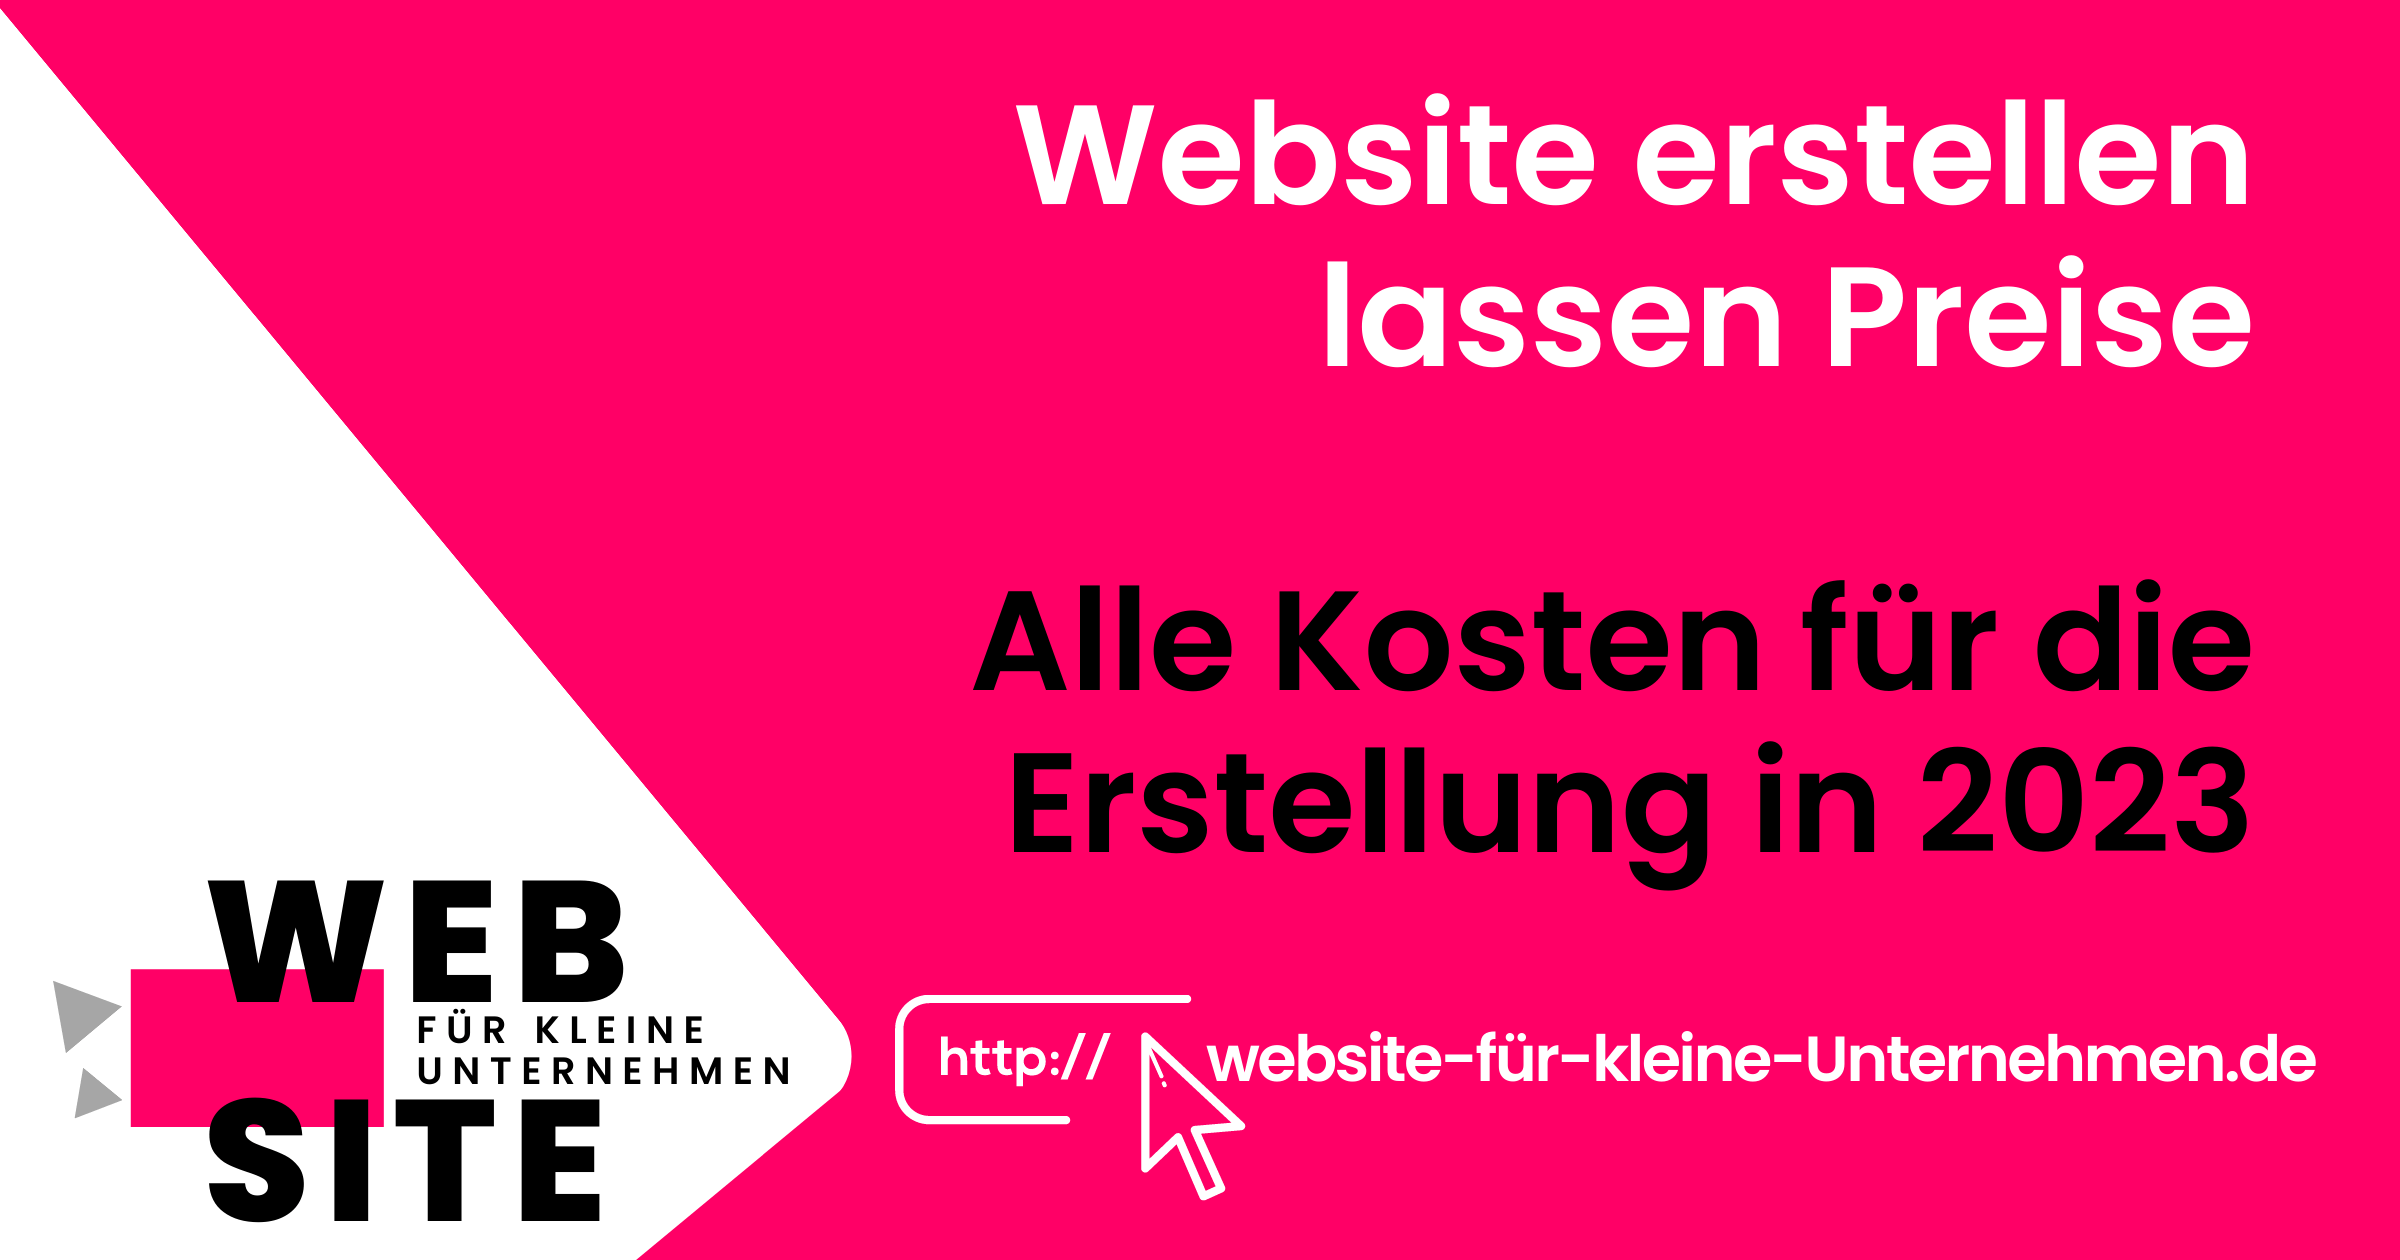 website-für-kleine-unternehmen - Website Erstellen lassen Preise - Featured Image